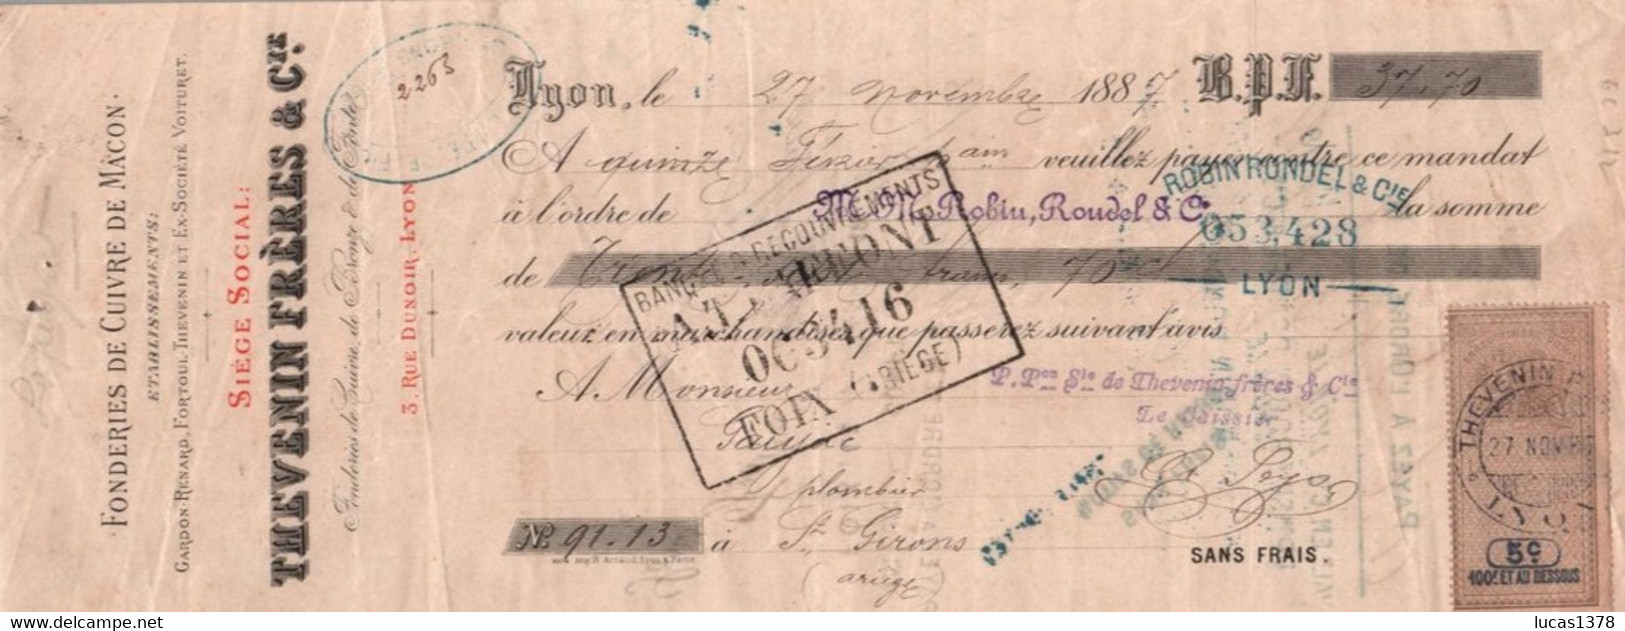 69 / CHEQUE 1887 /  TIMBRE FISCAL / LYON MACON  Sté Des FONDERIES De Cuivre THEVENIN Frères L. SEGUIN & Cie - Cheques En Traveller's Cheques